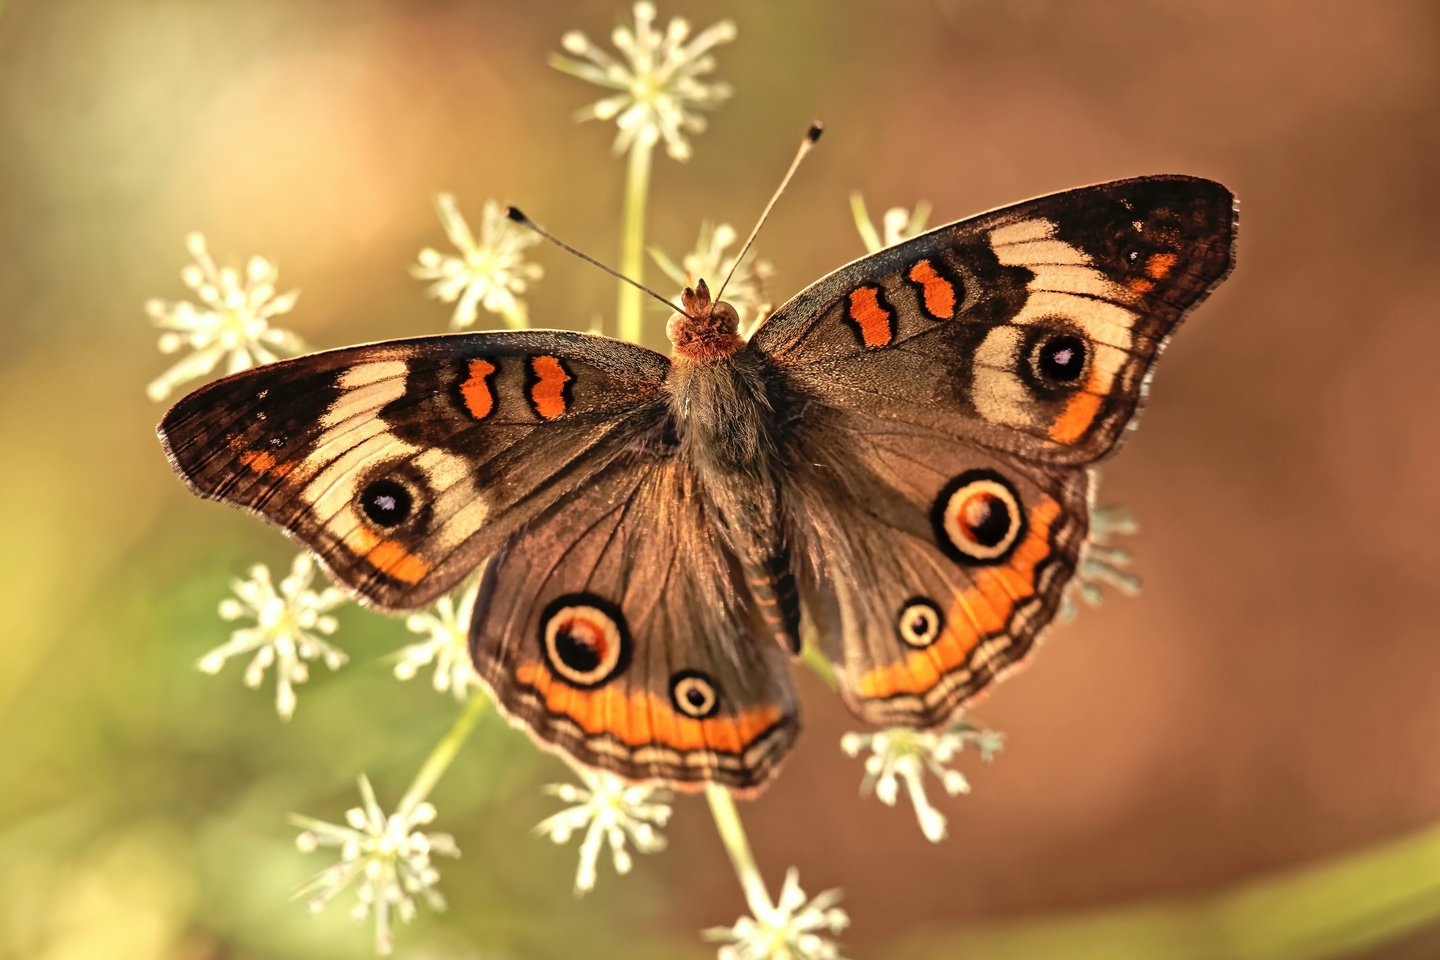 Dažniausiai drugeliai nyksta ir tampa reti, nes naikinamos jų gyvenamosios vietos.<br> Unsplash.com nuotr.